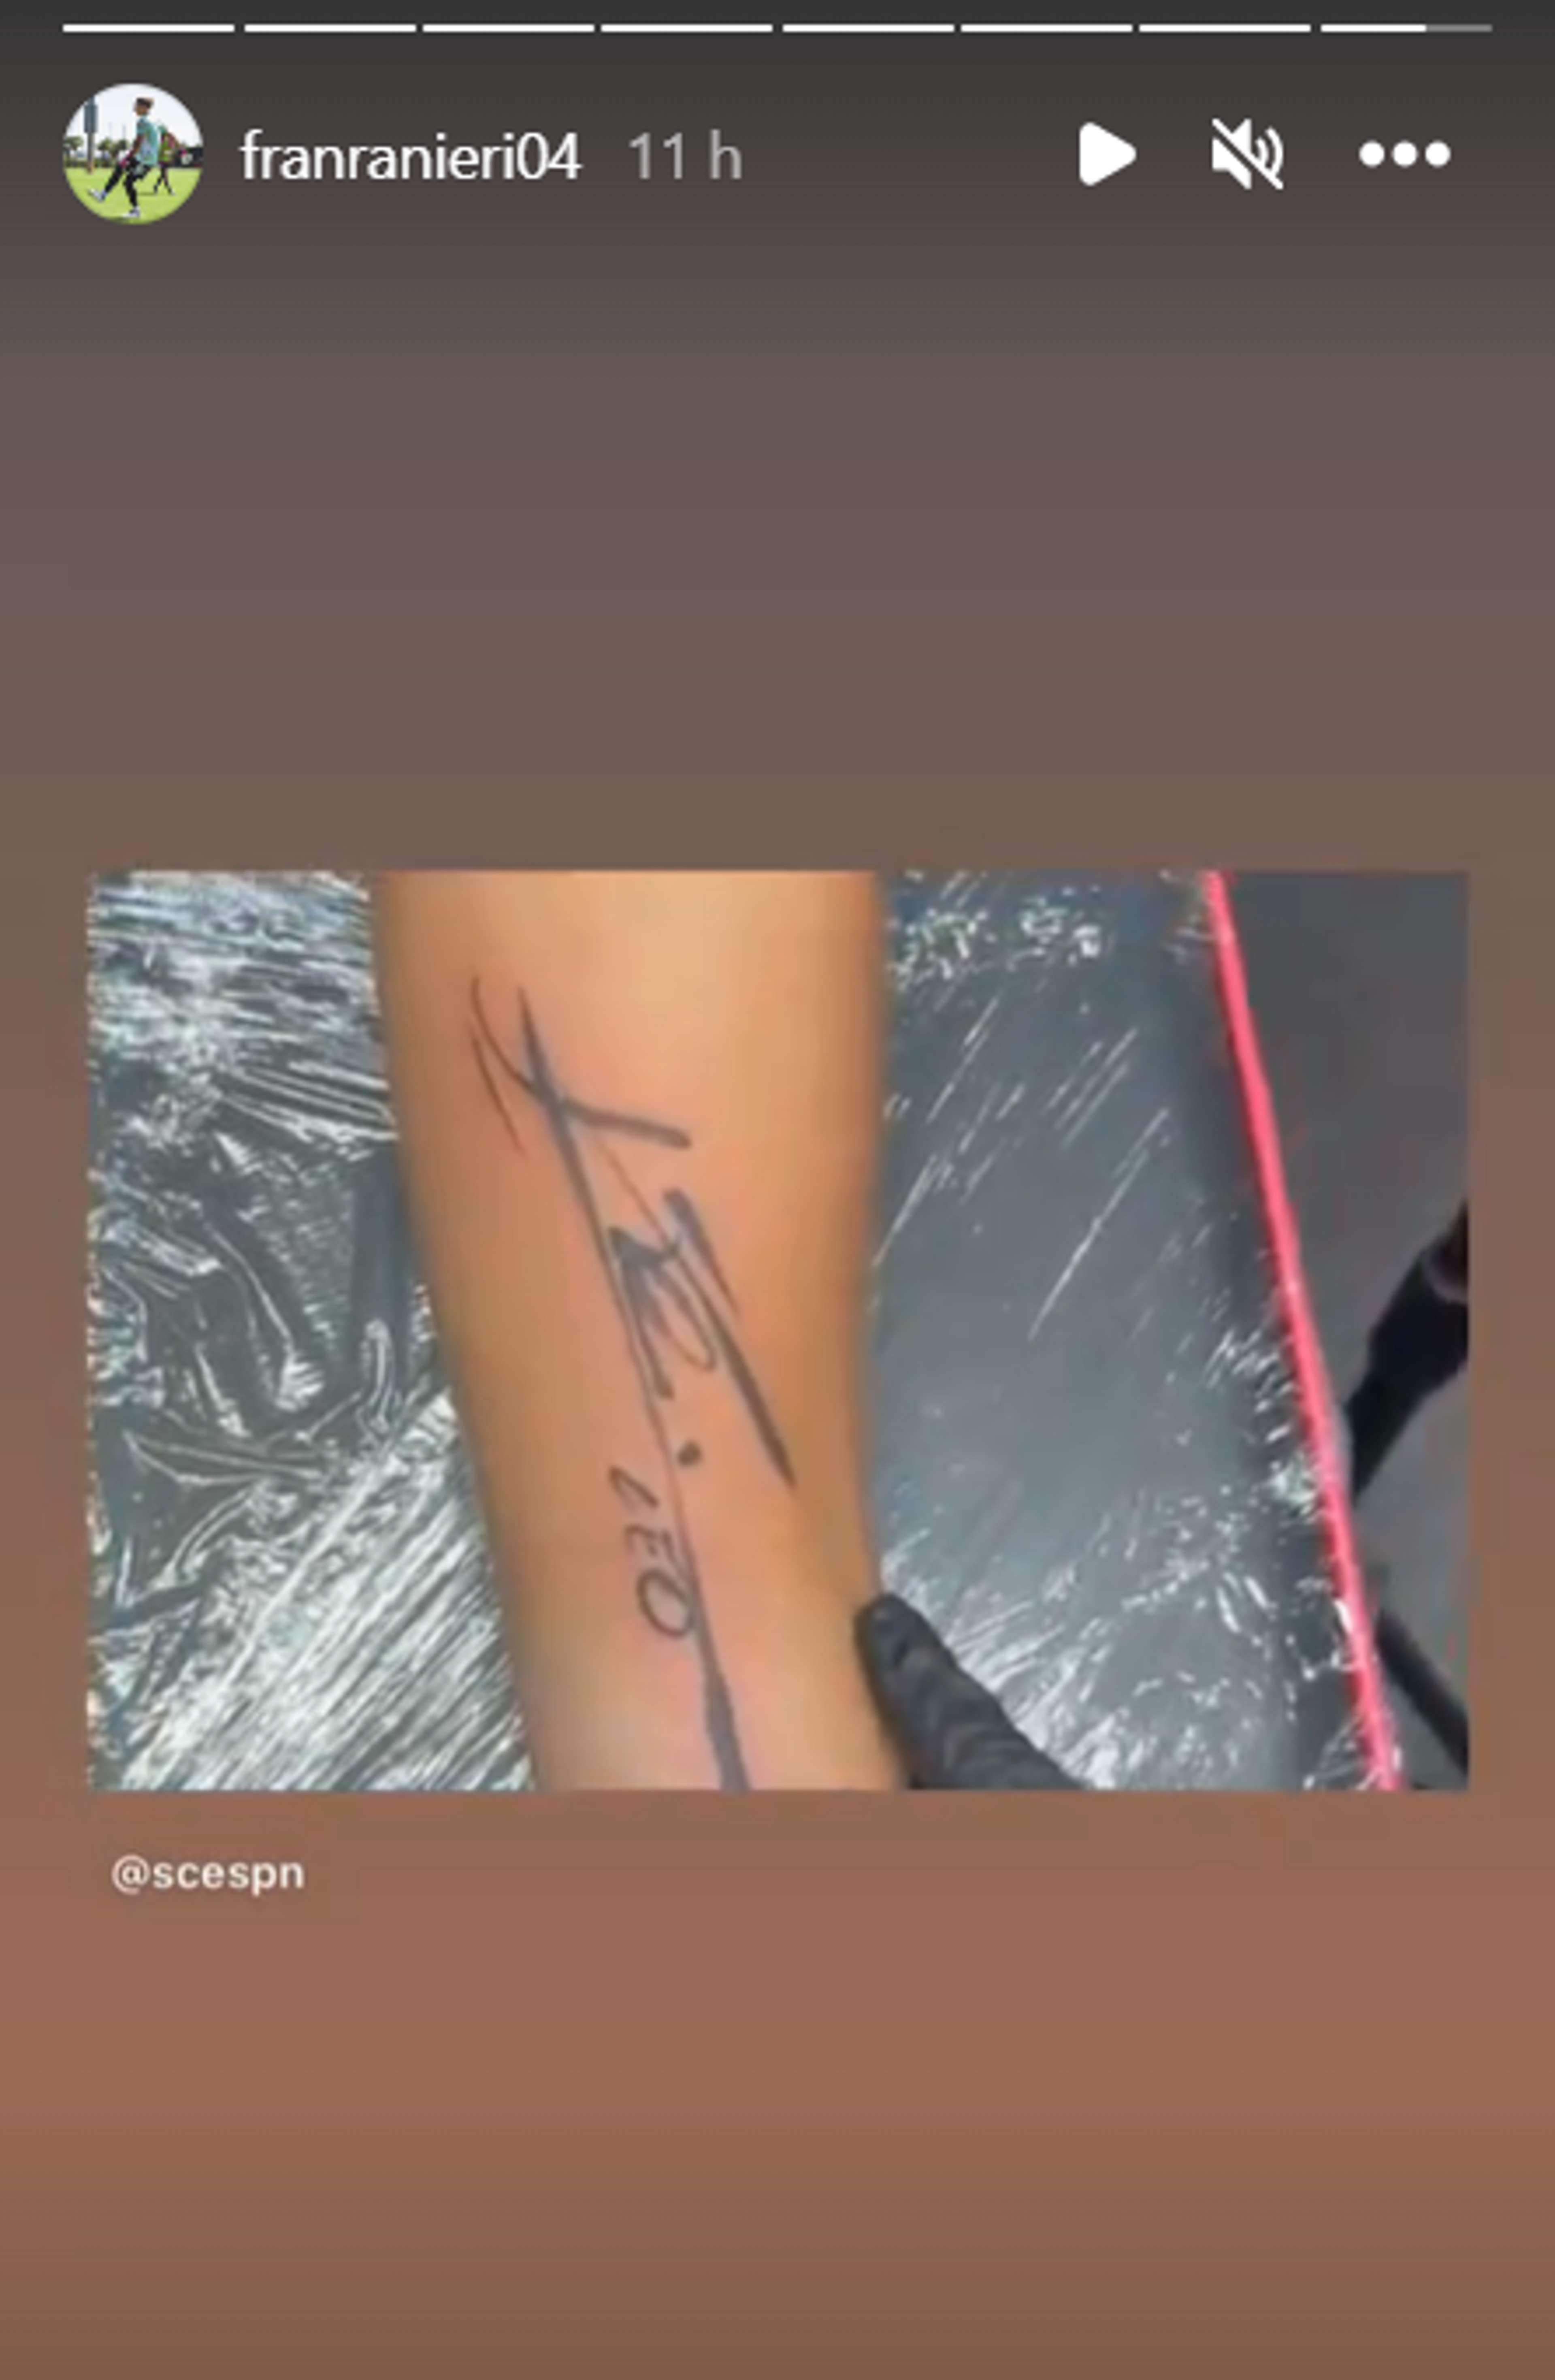 Francisco Ranieri Lionel Messi autograph tattoo